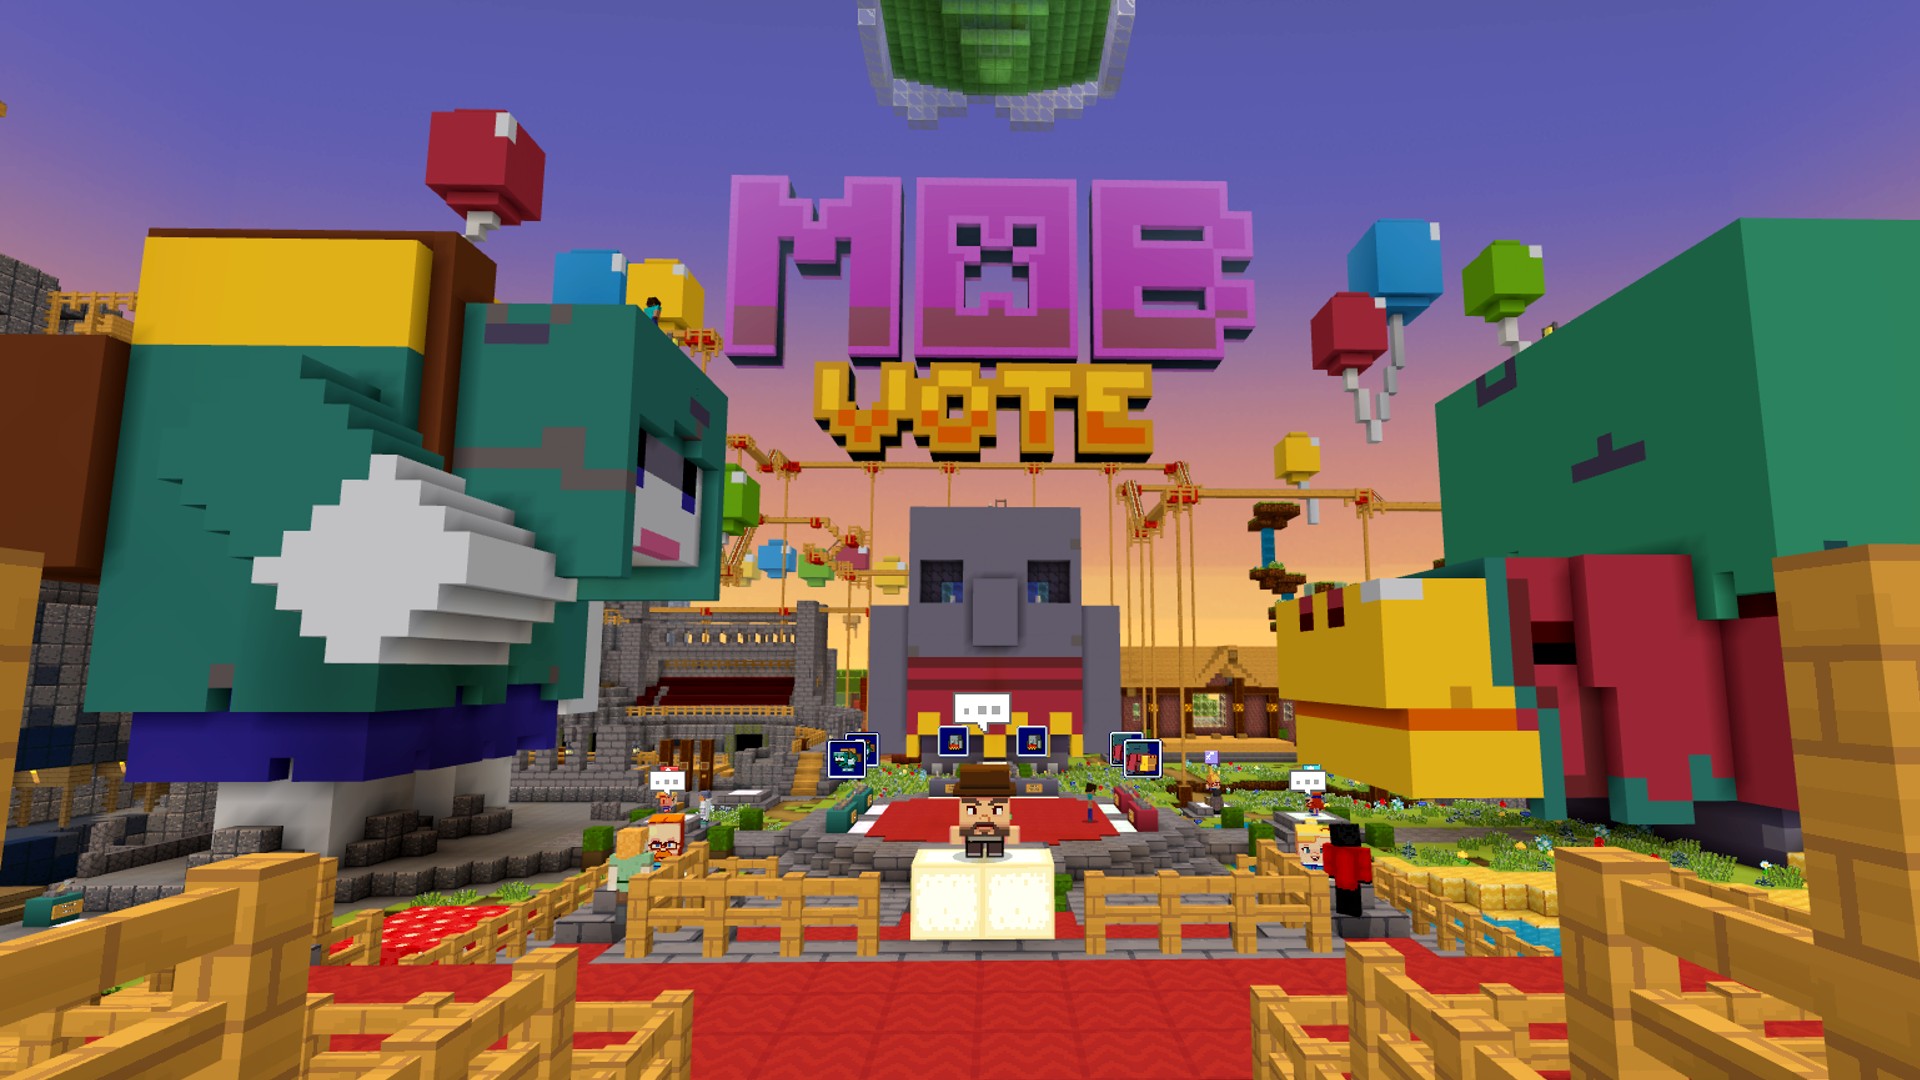 UPDATE: Winner] How to Vote in Minecraft Mob Vote 2022